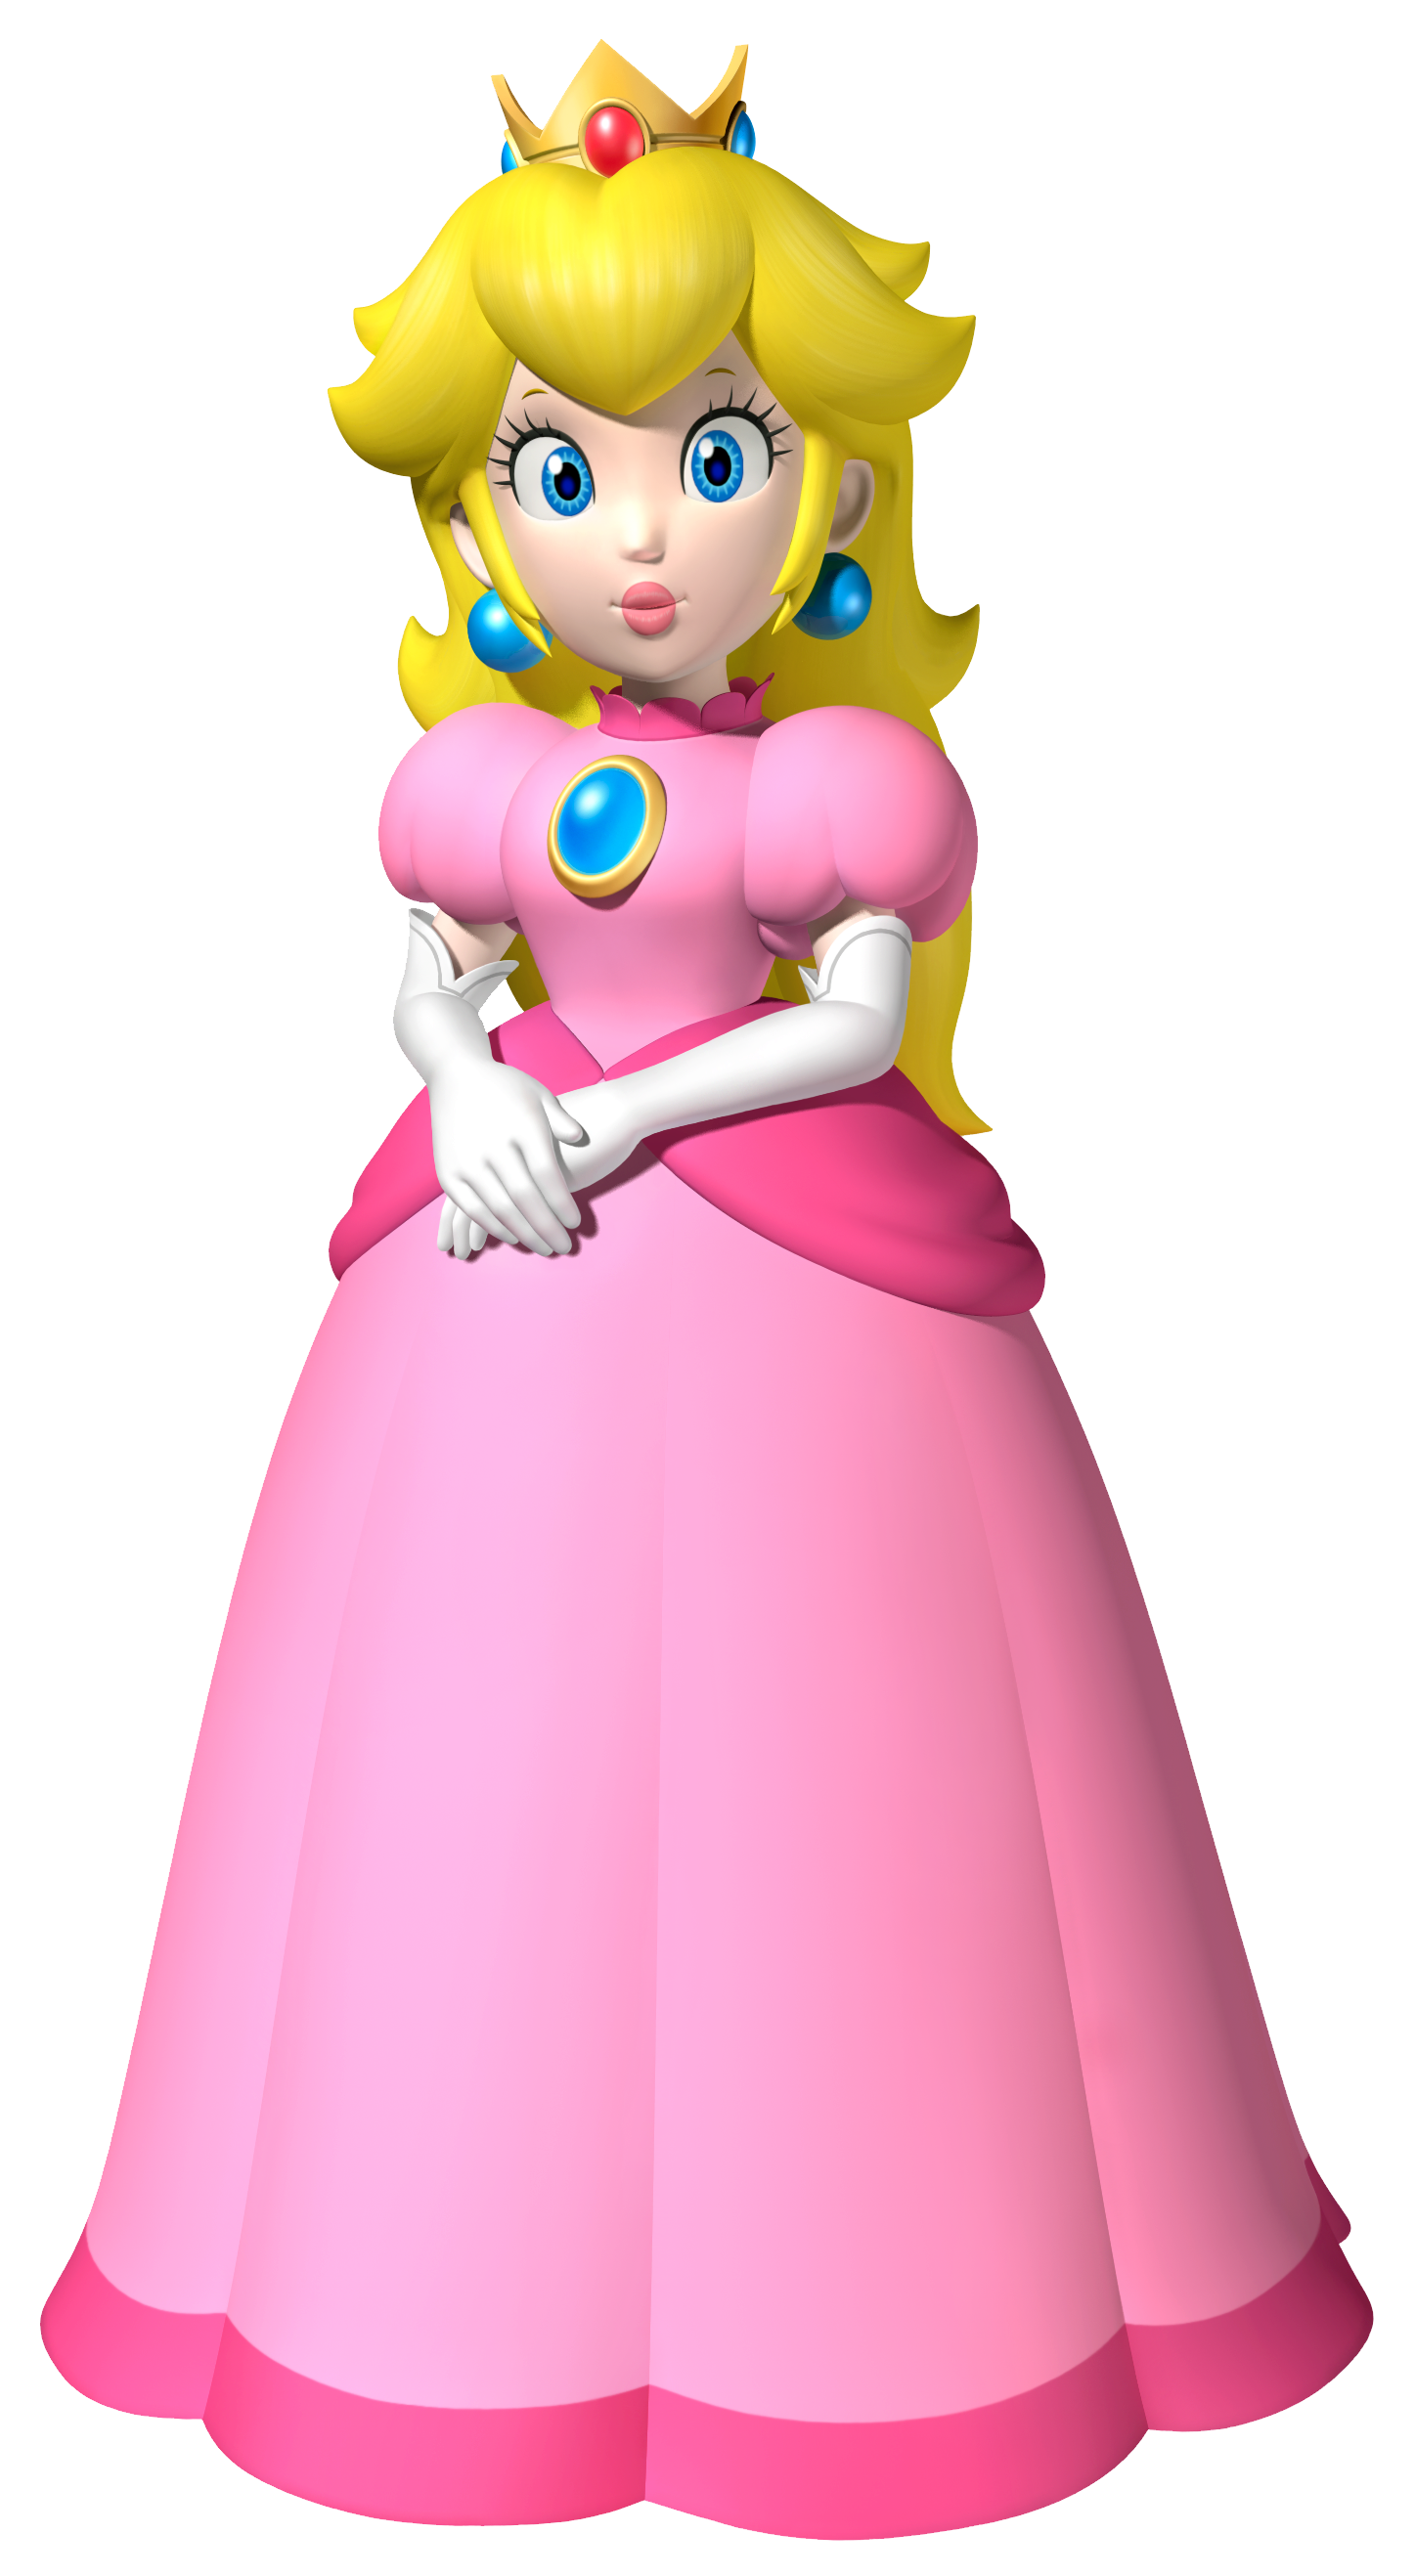 Super Mario Bundle png,Super Mario World Png,Princess Peach Bowser Bundle  png,Peaches Png ,Mario World,Mario Characters Png,Bowser Png